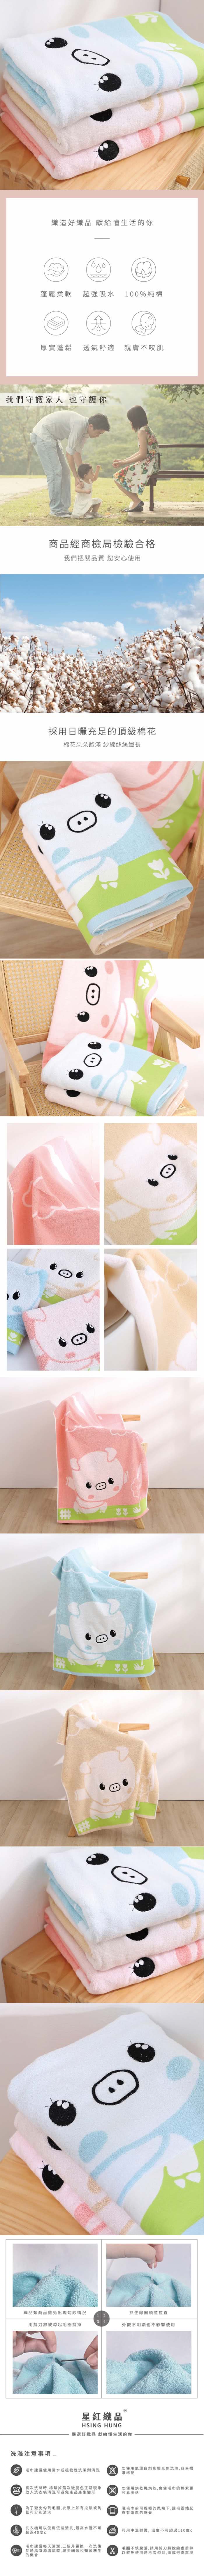 星紅織品 可愛小豬圖案純棉浴巾-6入(粉色/藍色/咖啡 3色